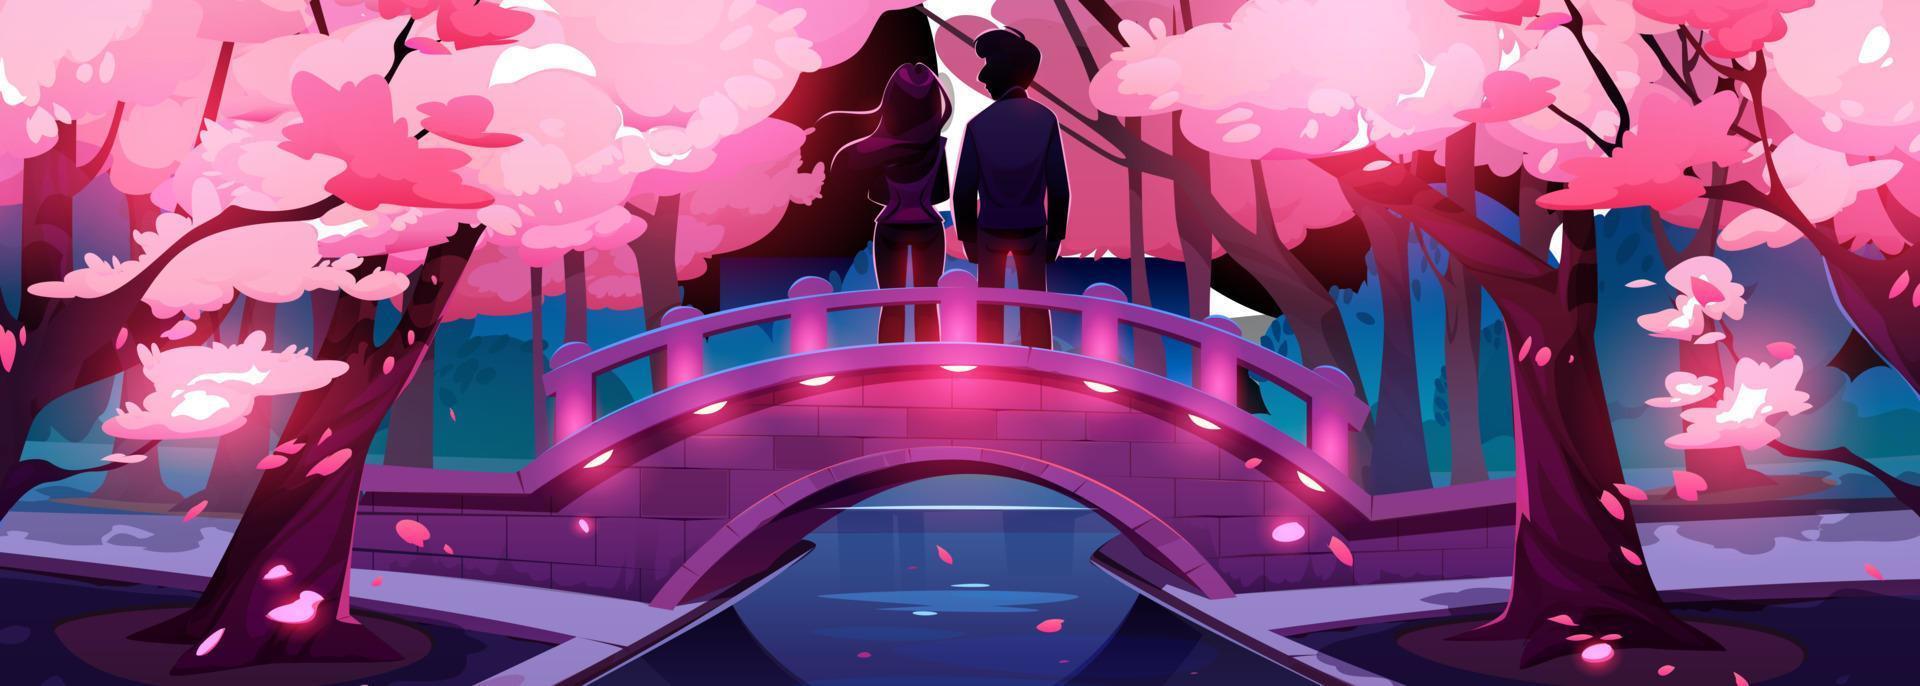 Love couple on bridge in night park with sakura vector